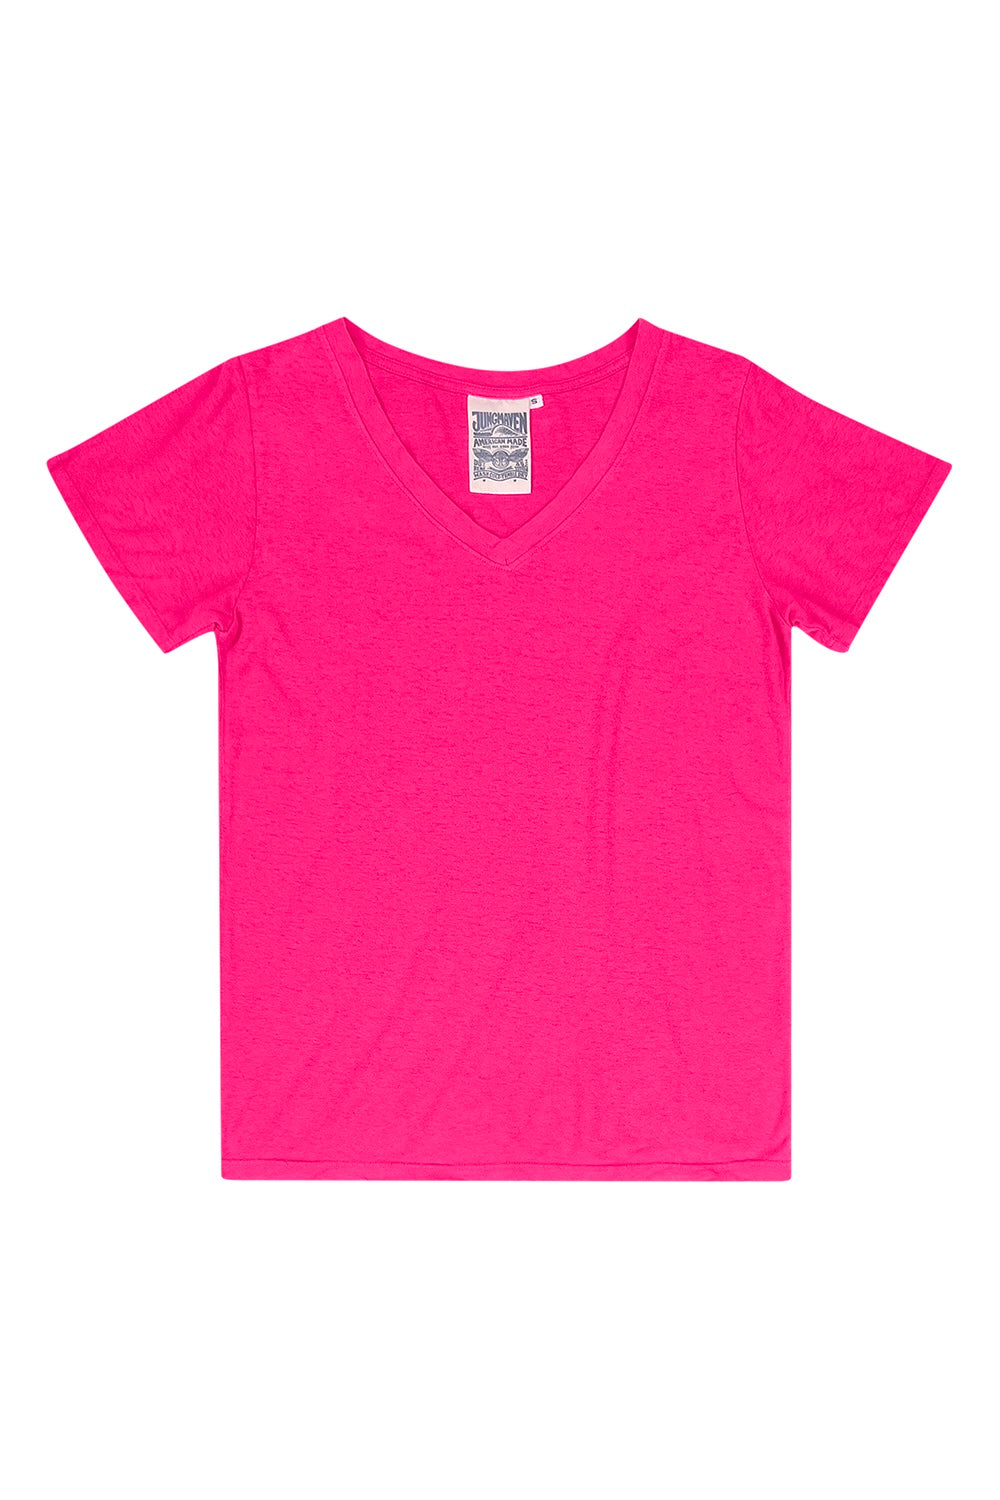 Paige V-neck | Jungmaven Hemp Clothing & Accessories / Color: Pink Grapefruit